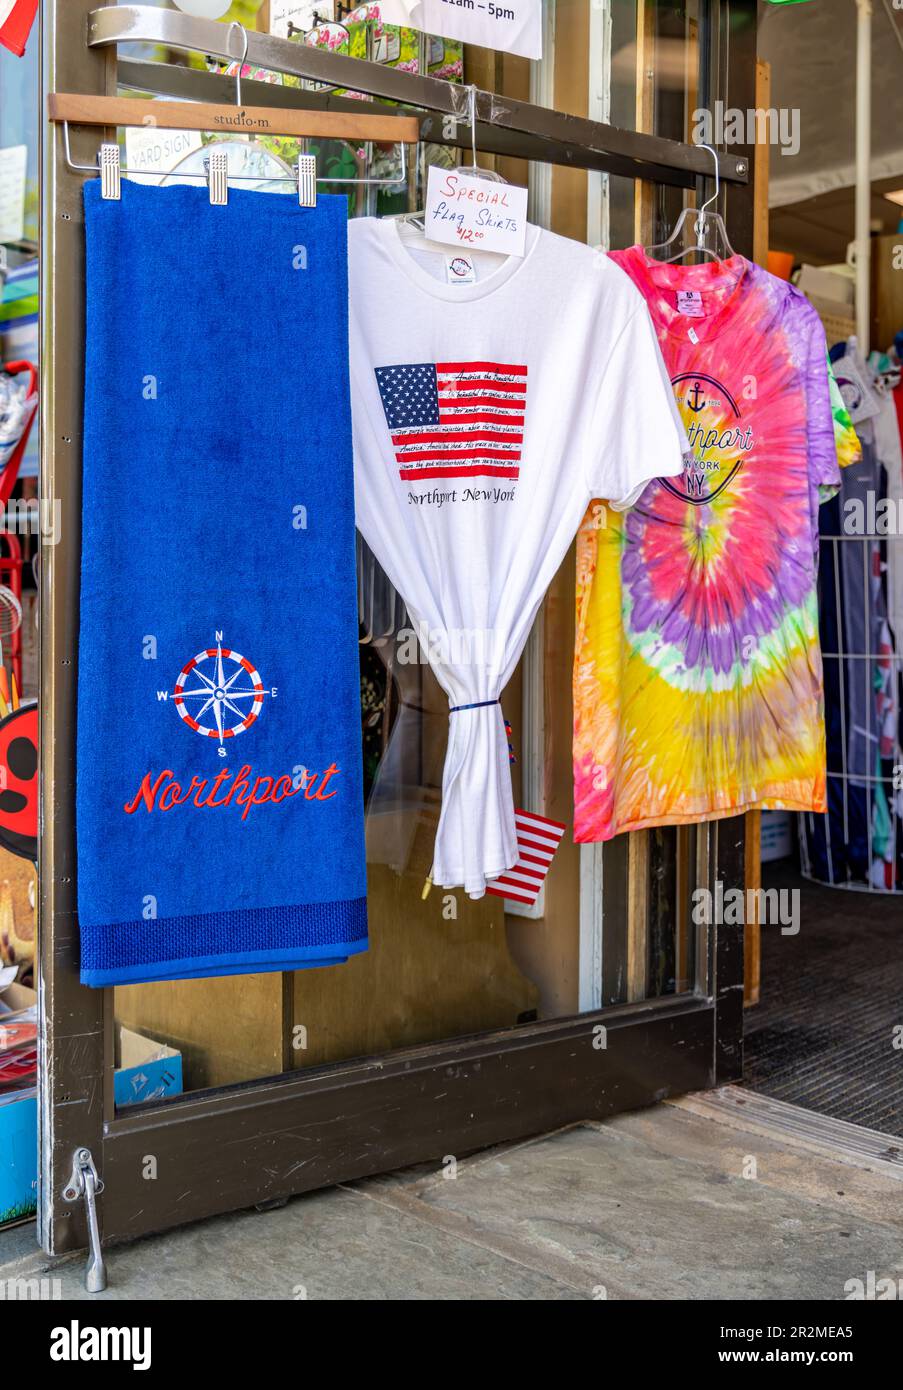 Un'immagine di t-shirt e telo da spiaggia in mostra in un negozio northport sulla strada principale Foto Stock